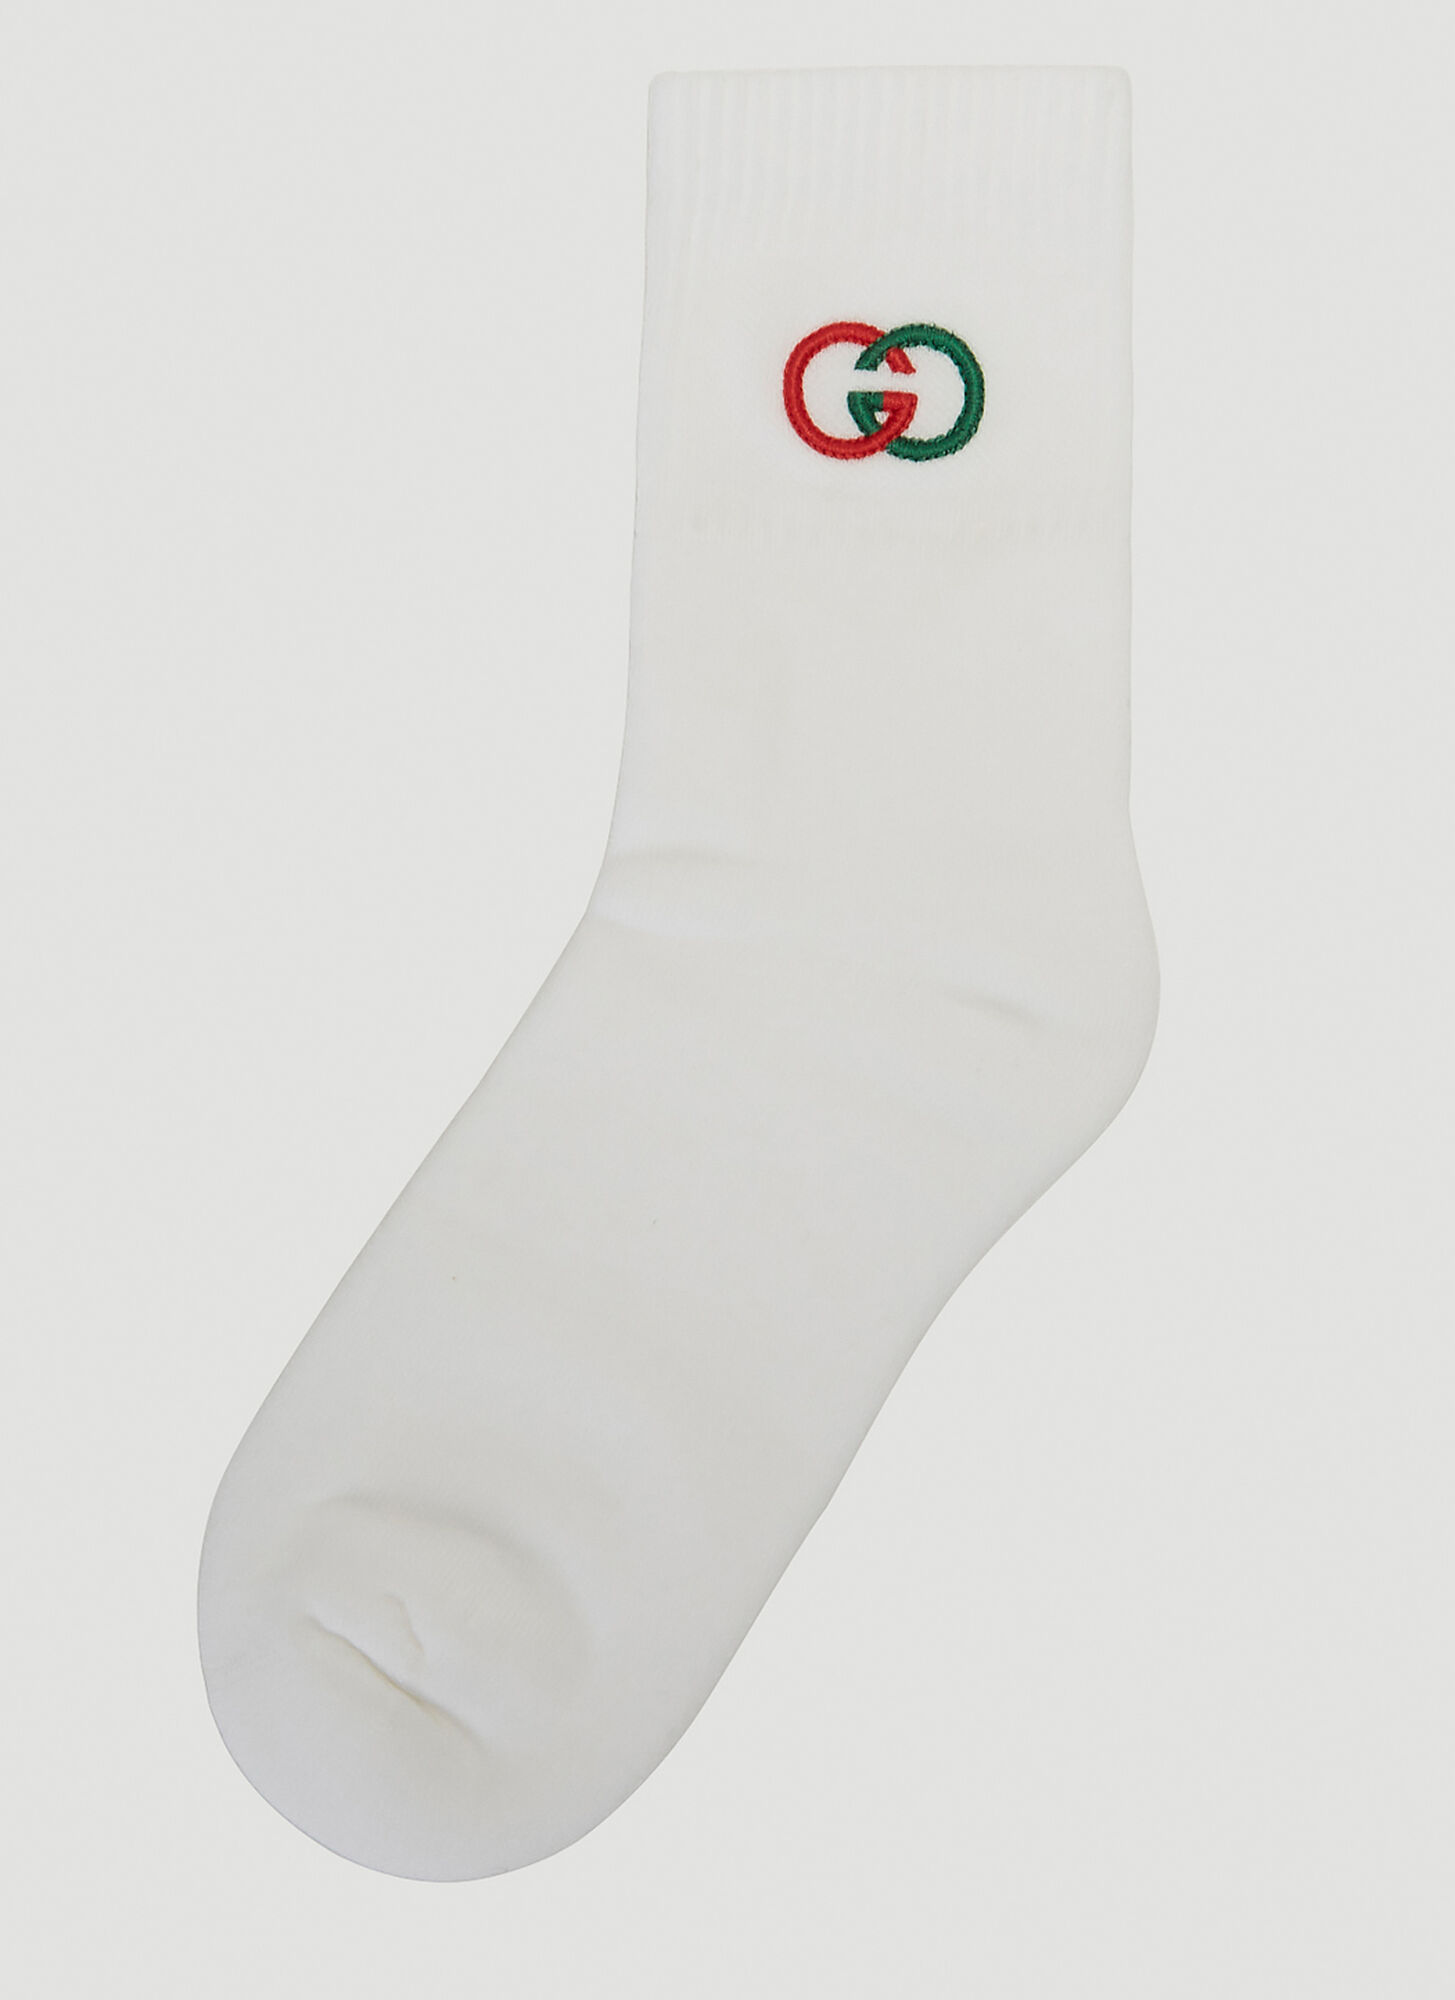 Gucci Interlocking G Socks in White size M | The Fashionisto